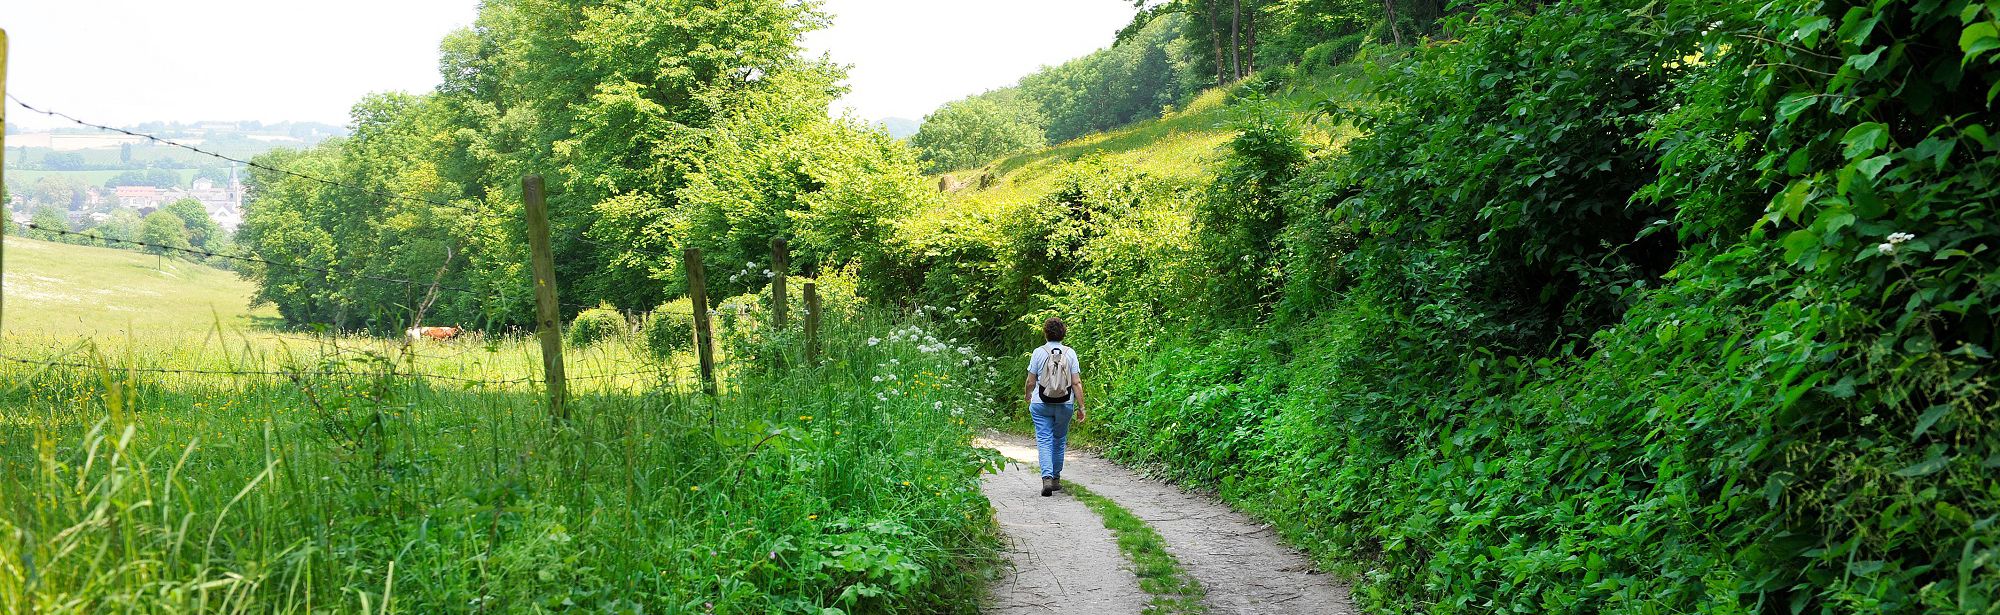 Wandelaar in Gerendal op het wandelpad langs de groene struiken en bomen